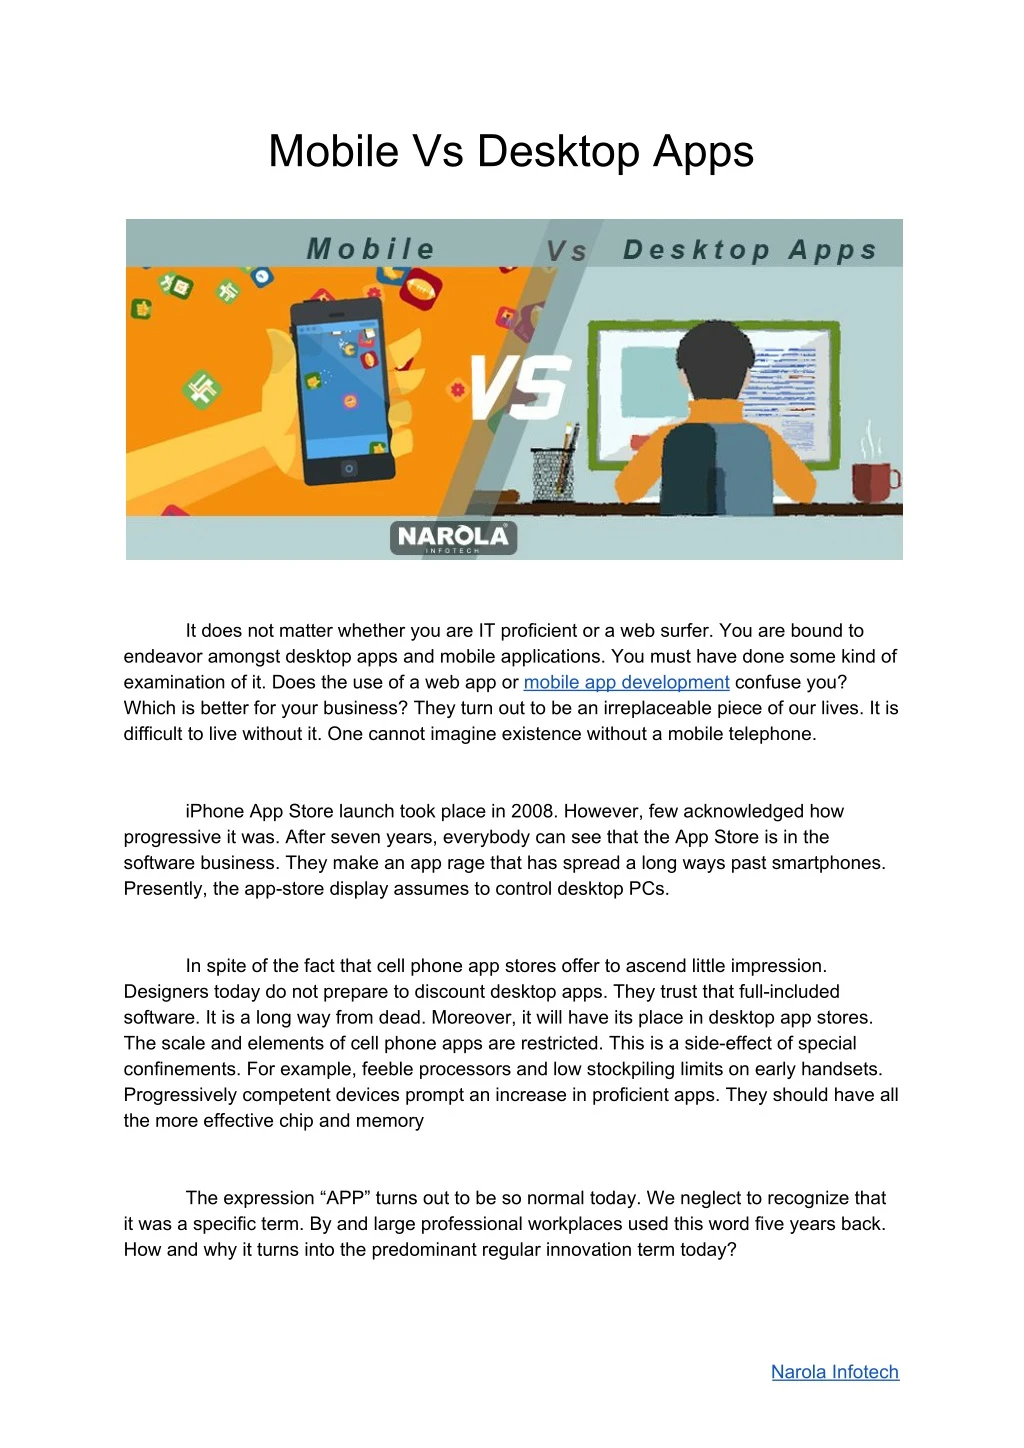 mobile vs desktop apps